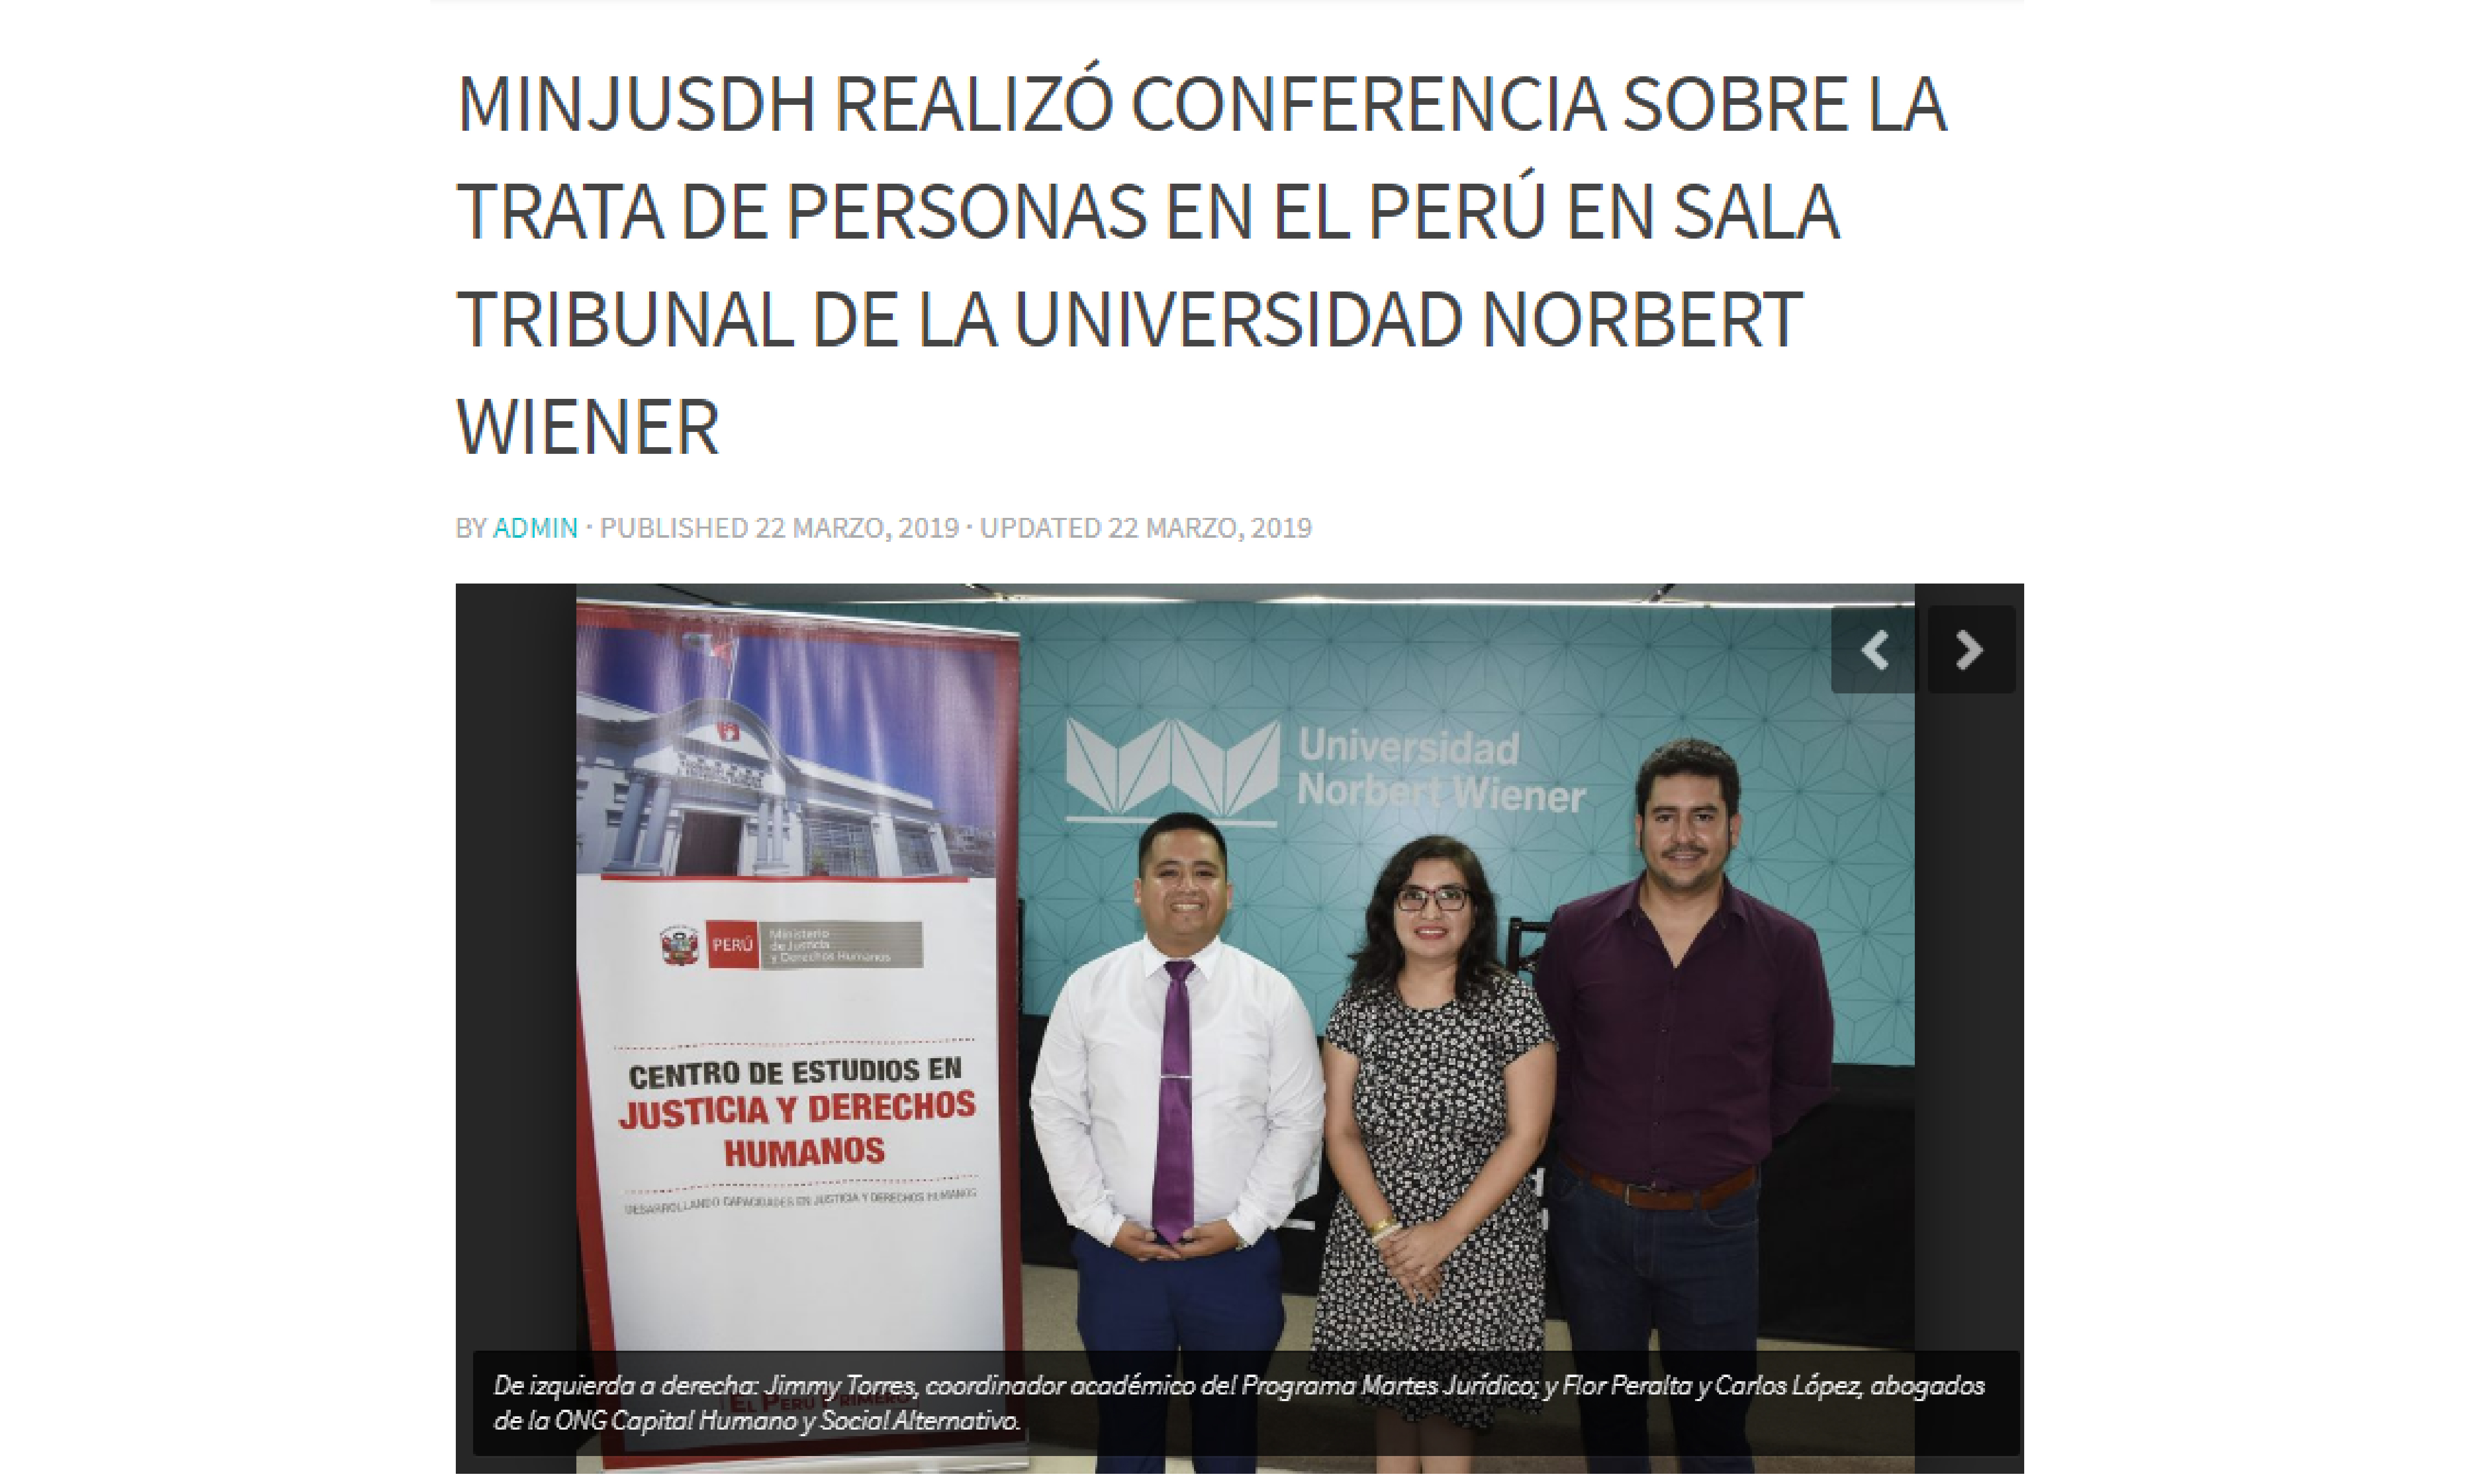 MINJUSDH realizó conferencia sobre la trata de personas en el Perú en sala tribunal de la Universidad Norbert Wiener